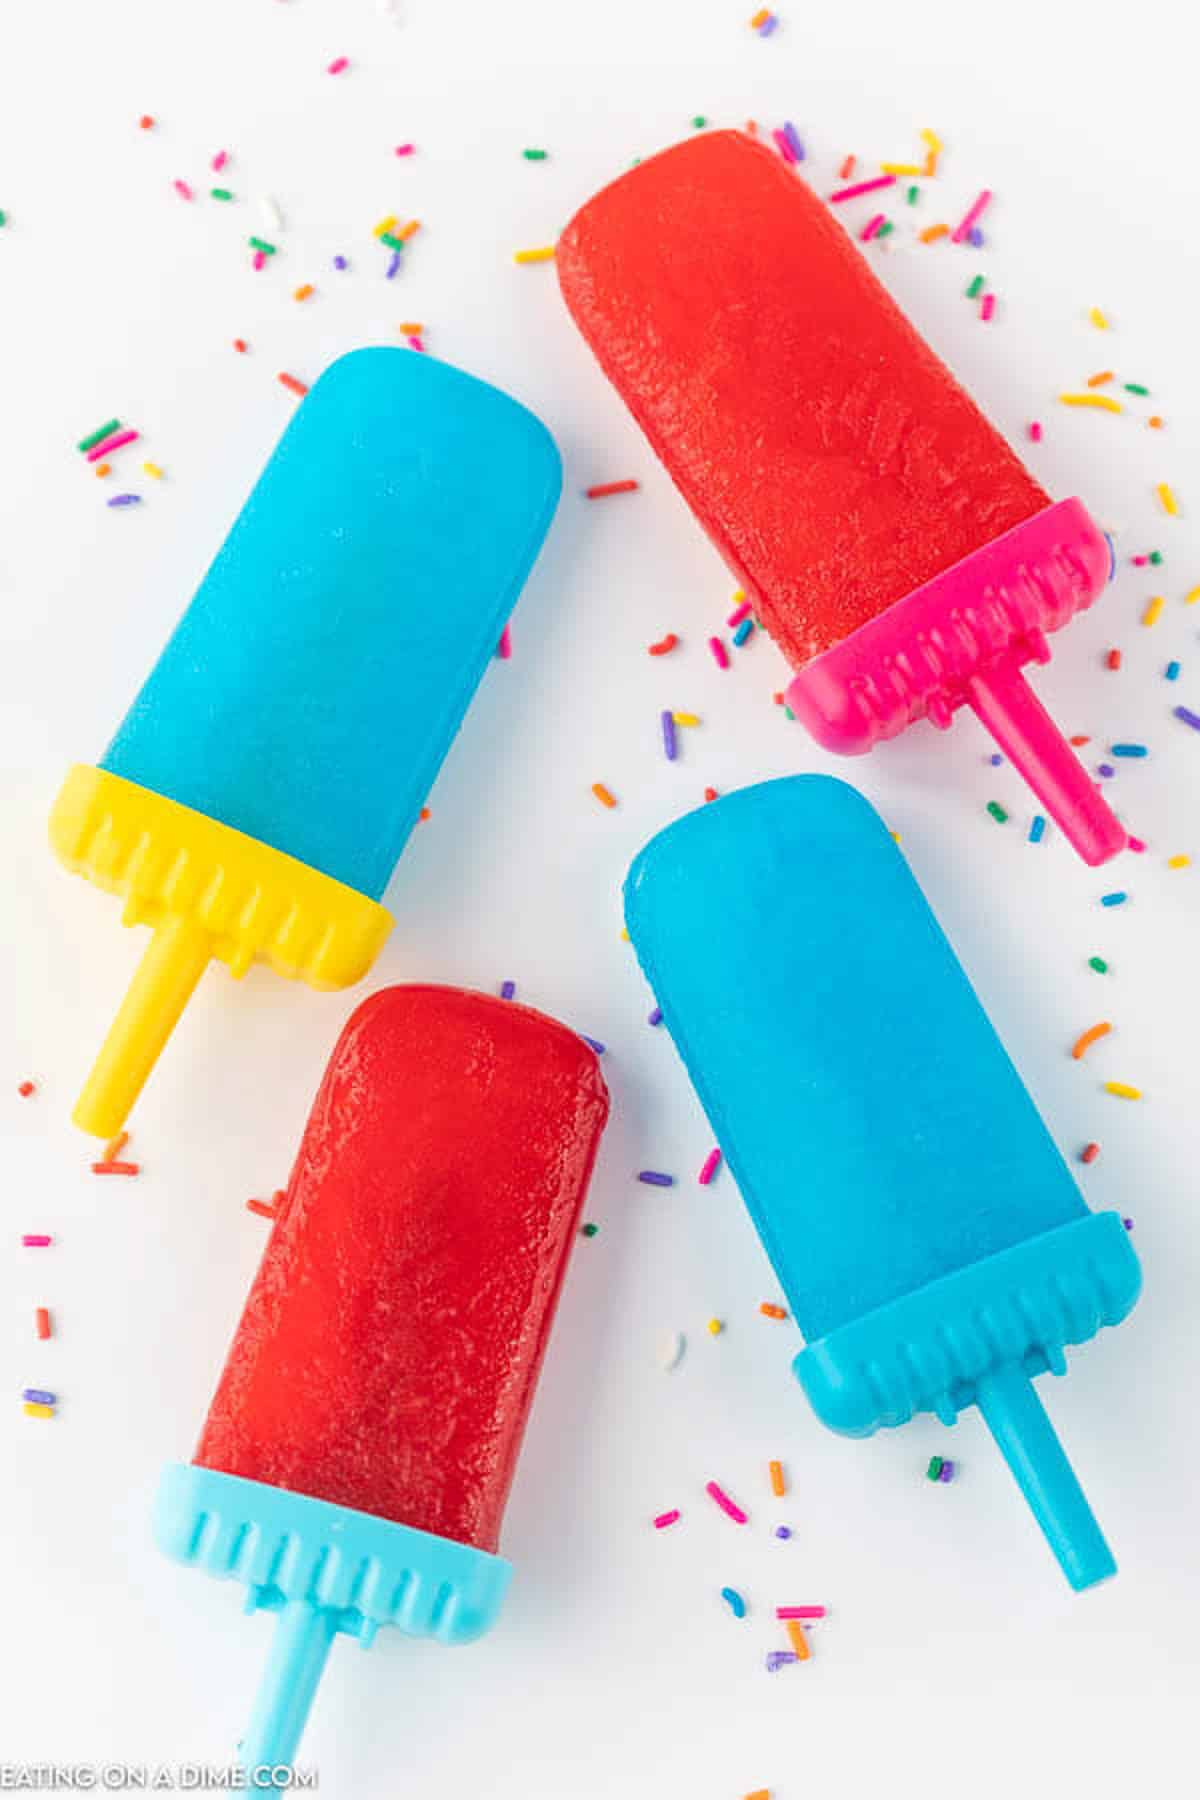 https://www.eatingonadime.com/wp-content/uploads/2021/04/jello-popsicles-2.jpg